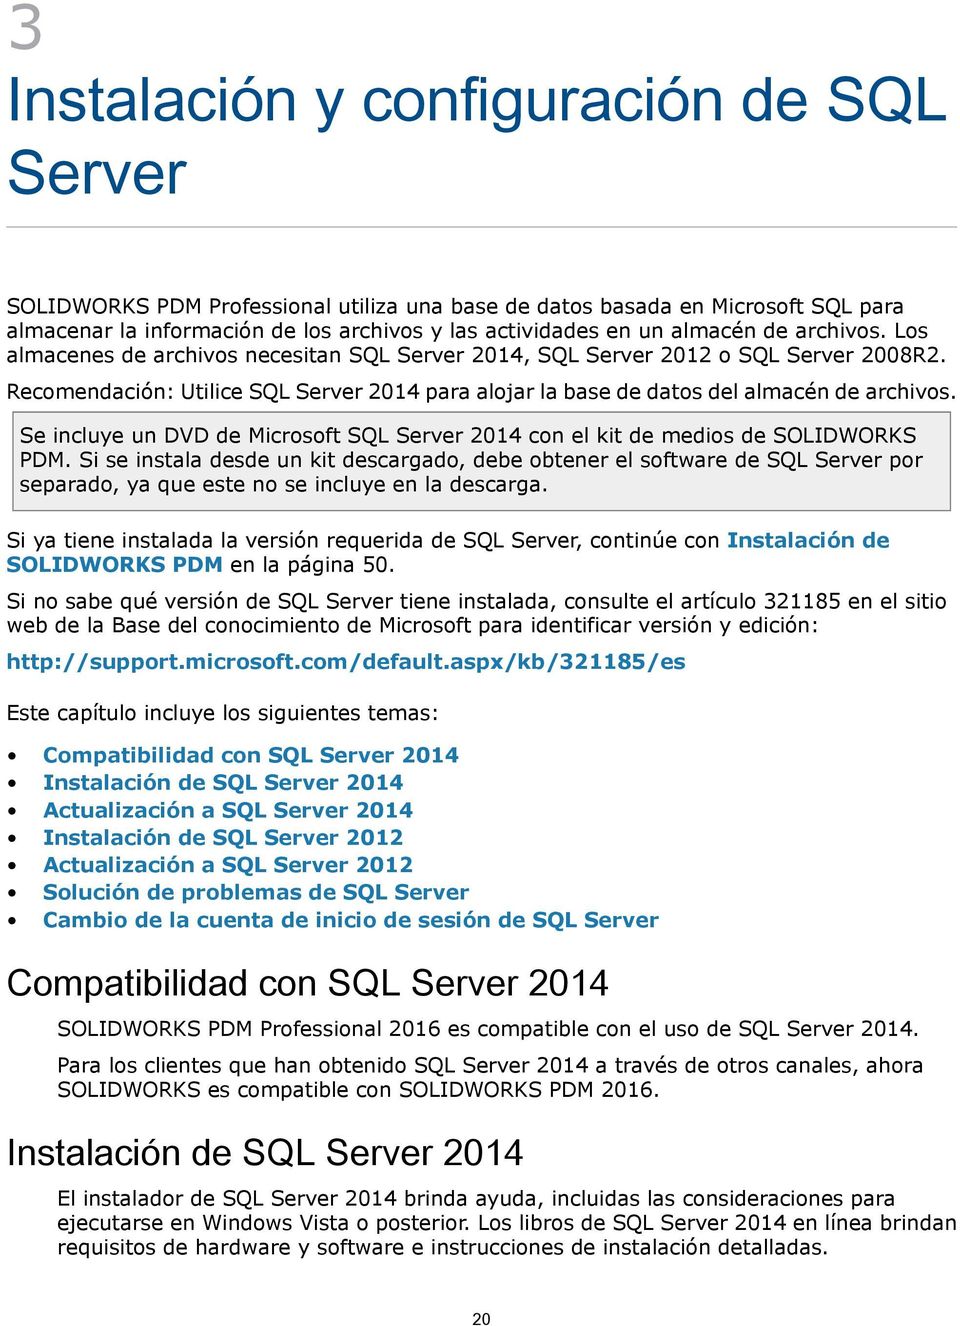 Se incluye un DVD de Microsoft SQL Server 2014 con el kit de medios de SOLIDWORKS PDM.